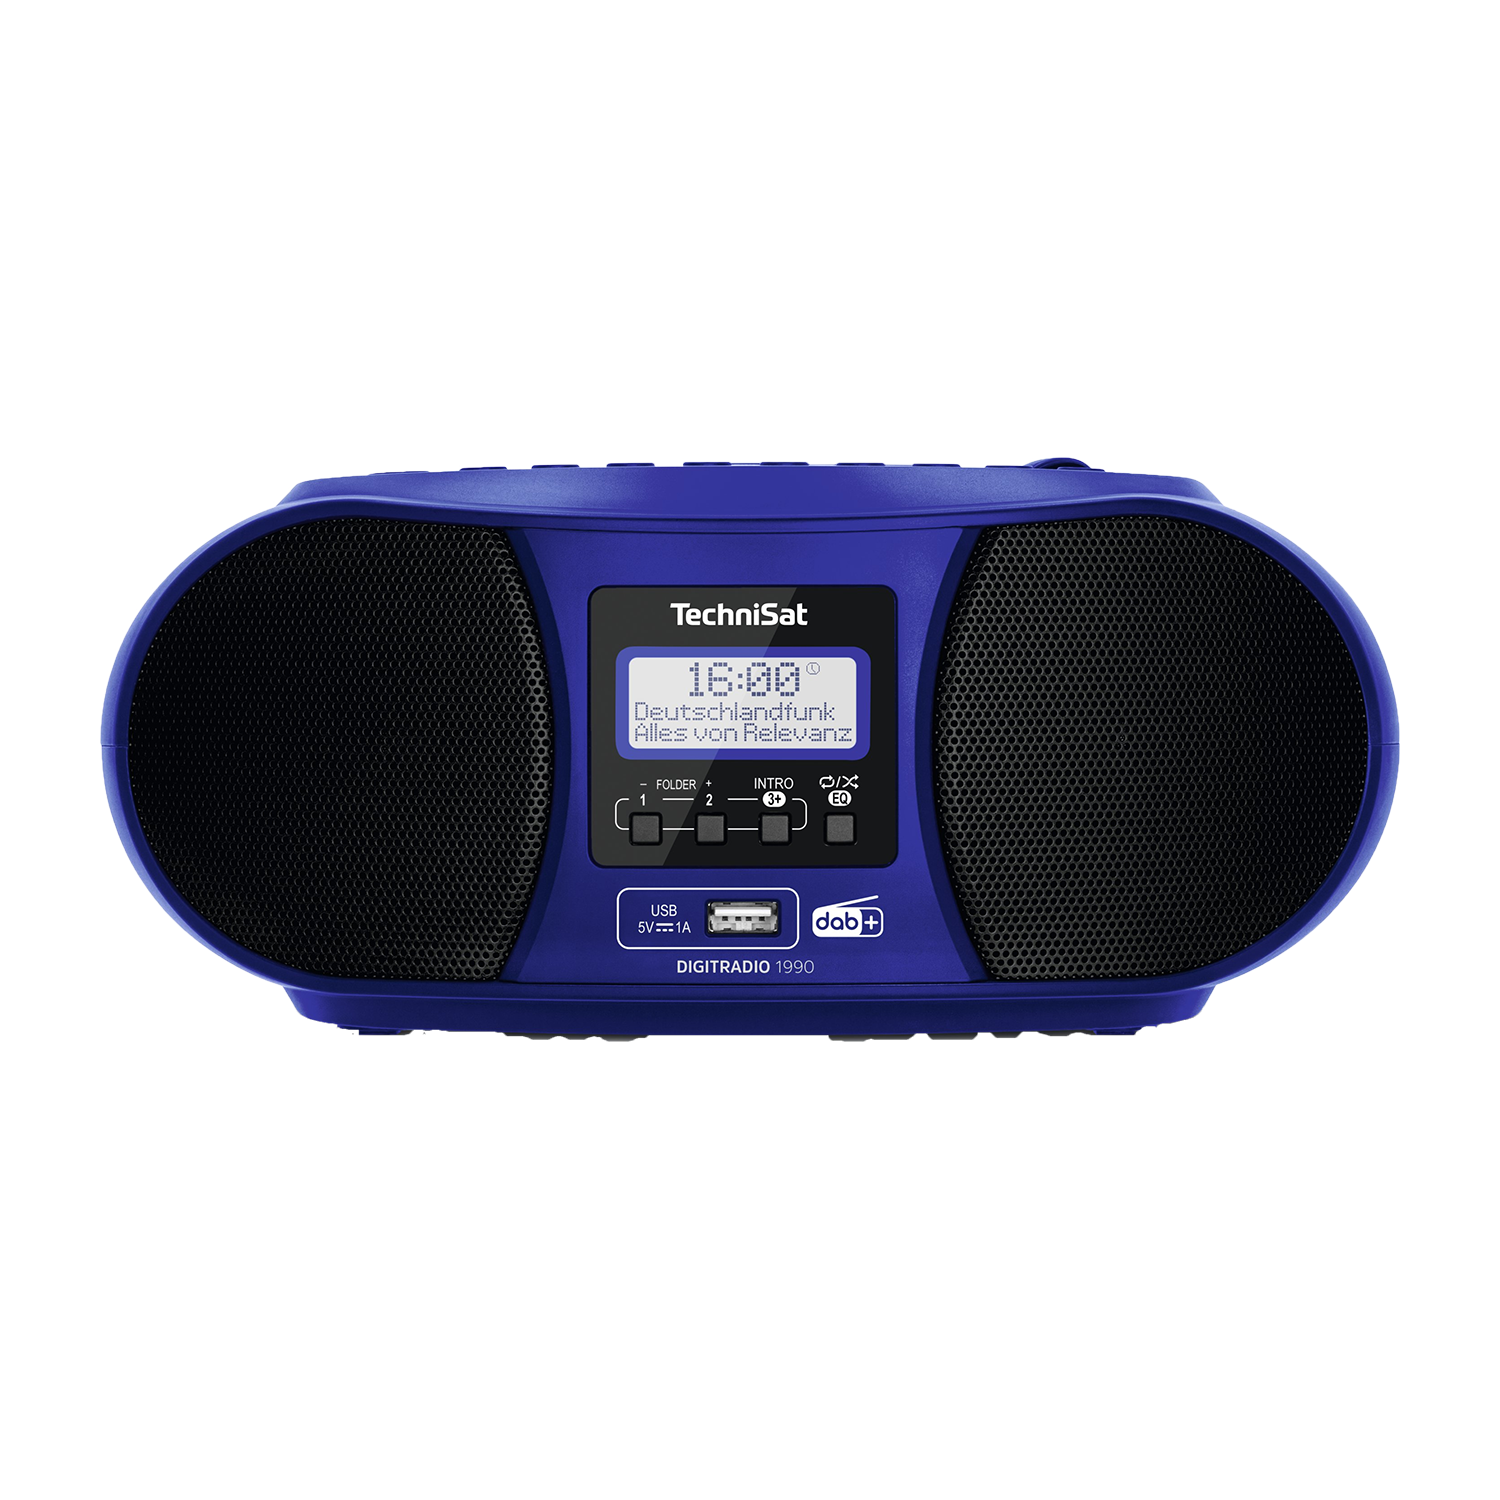 Technisat DigitRadio 1990 | Radio | DAB+ Digitalradio | CD-Wiedergabe | Bluetooth-Audiostreaming | Ganz klassisch Radio hören | Uhr | Wecker | Blau